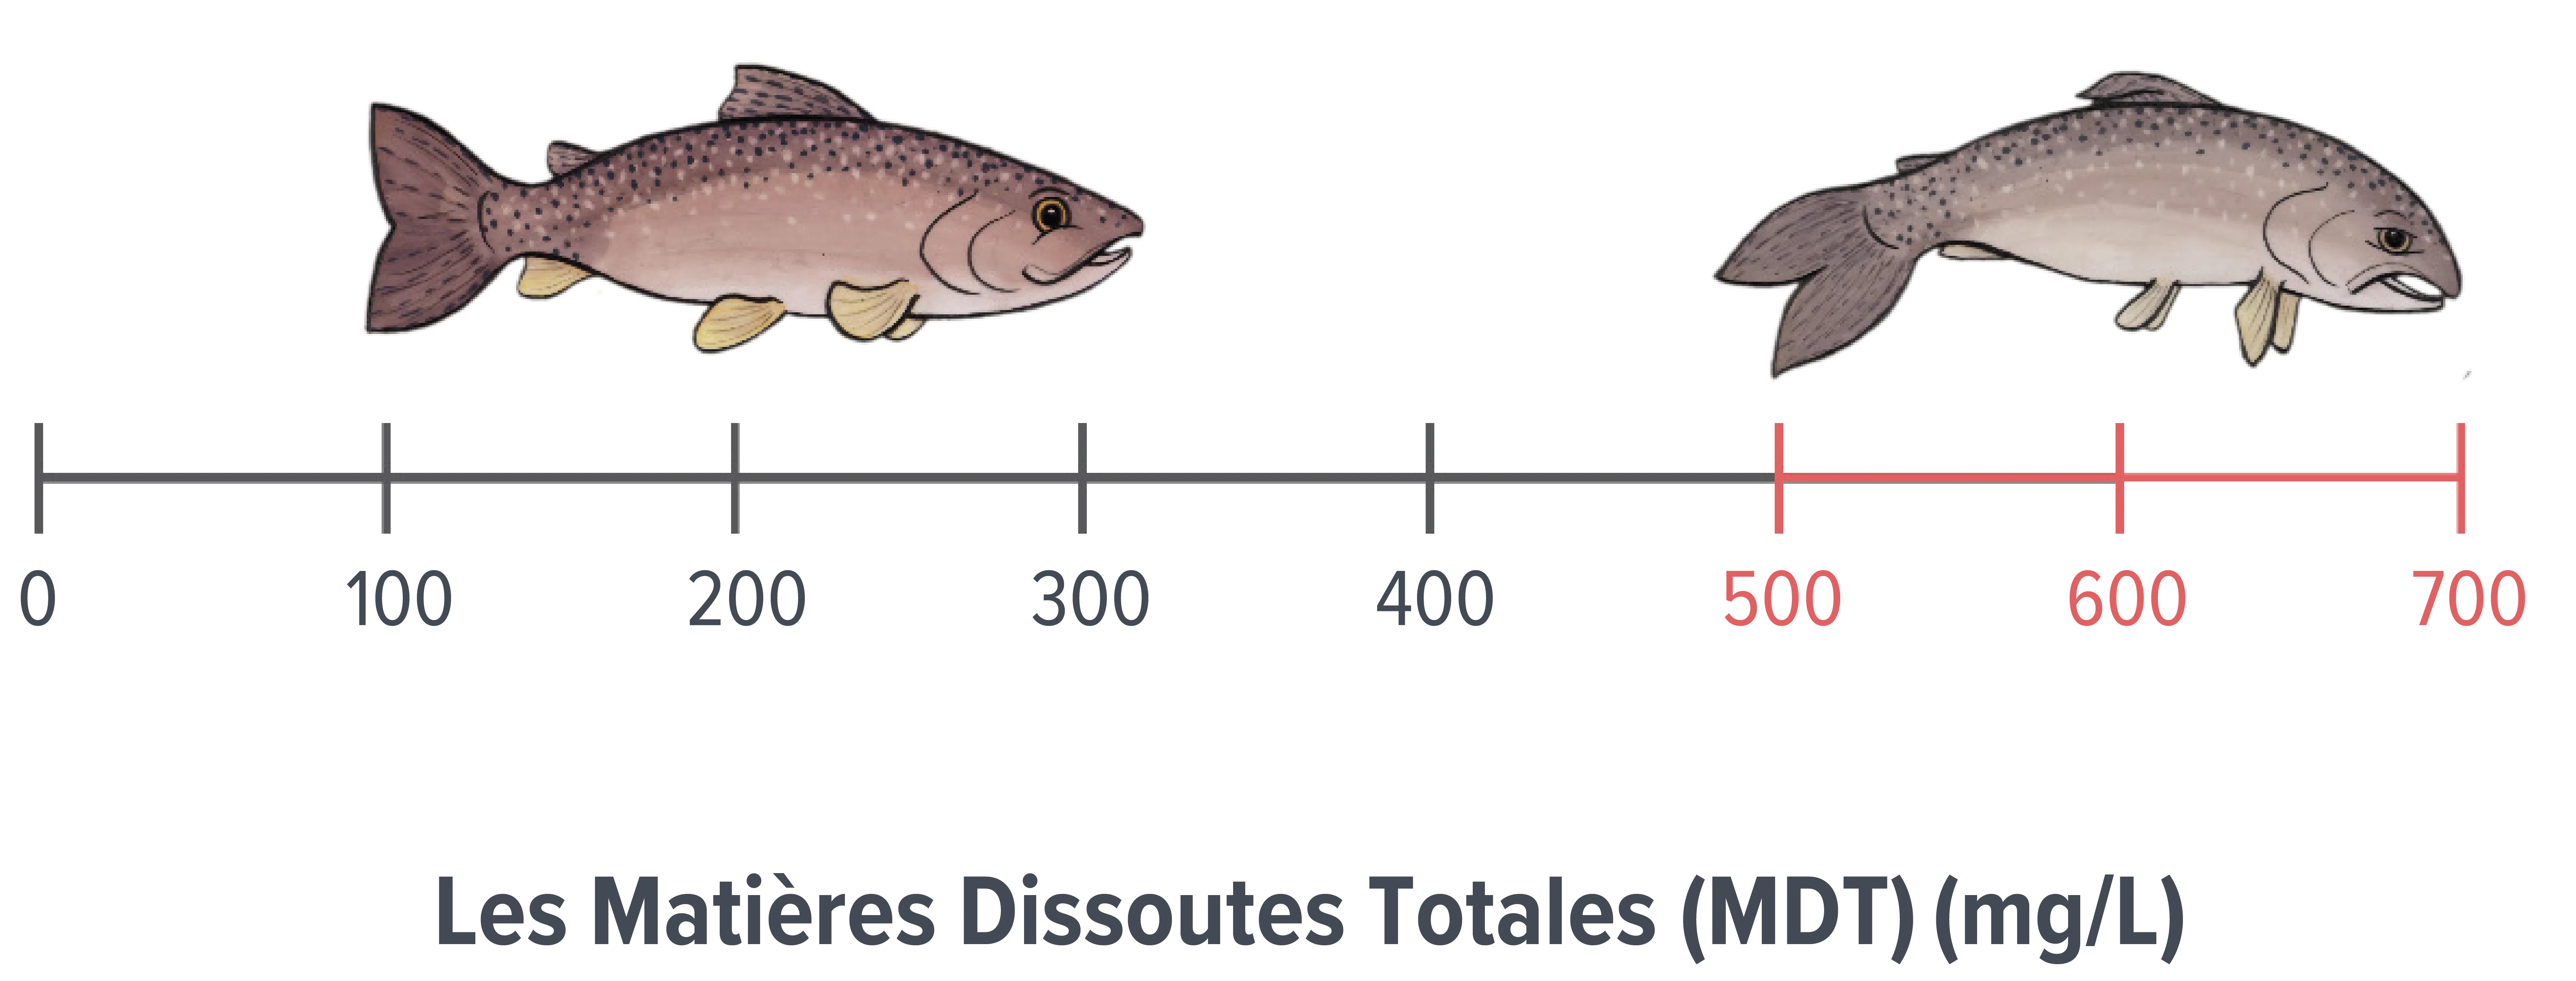 Échelle de concentration des matières dissoutes totales montrant un poisson sain entre 0 et 300 milligrammes par litre et un poisson en mauvaise santé entre 500 et 700 milligrammes par litre.